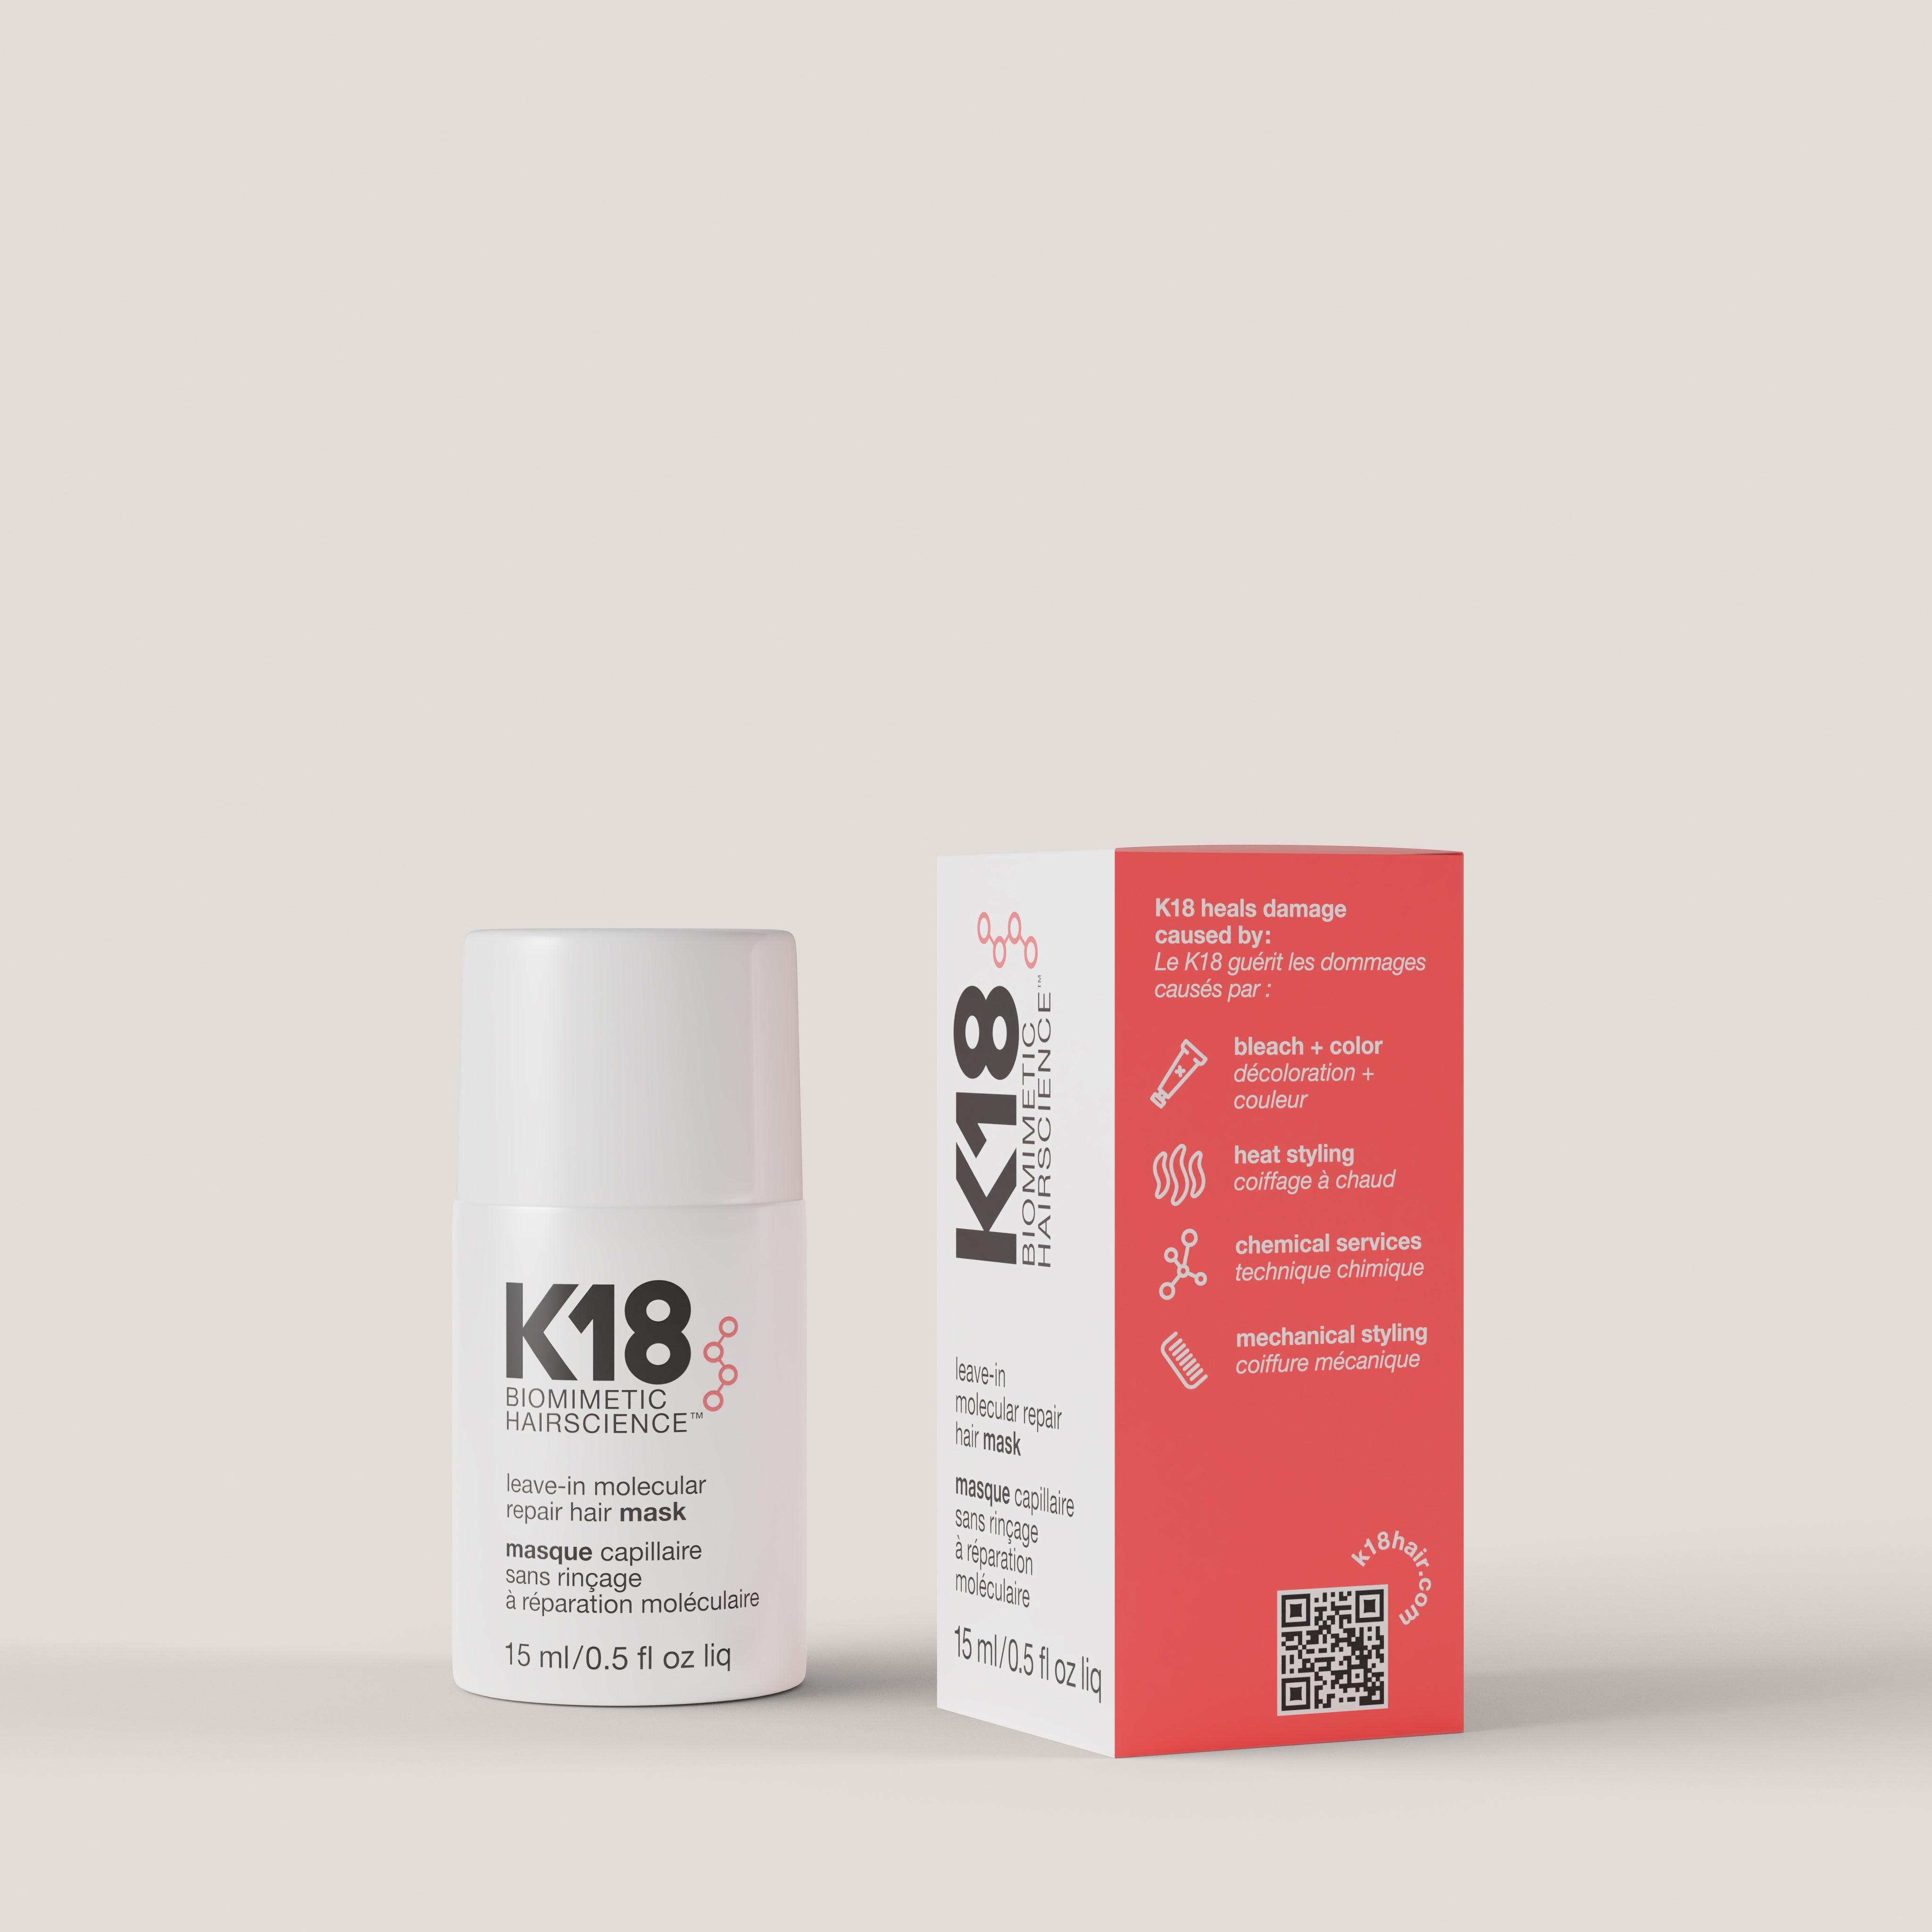 K18 Leave-in Molecular Repair Hair Mask 15ml – Platinum Expert Hair